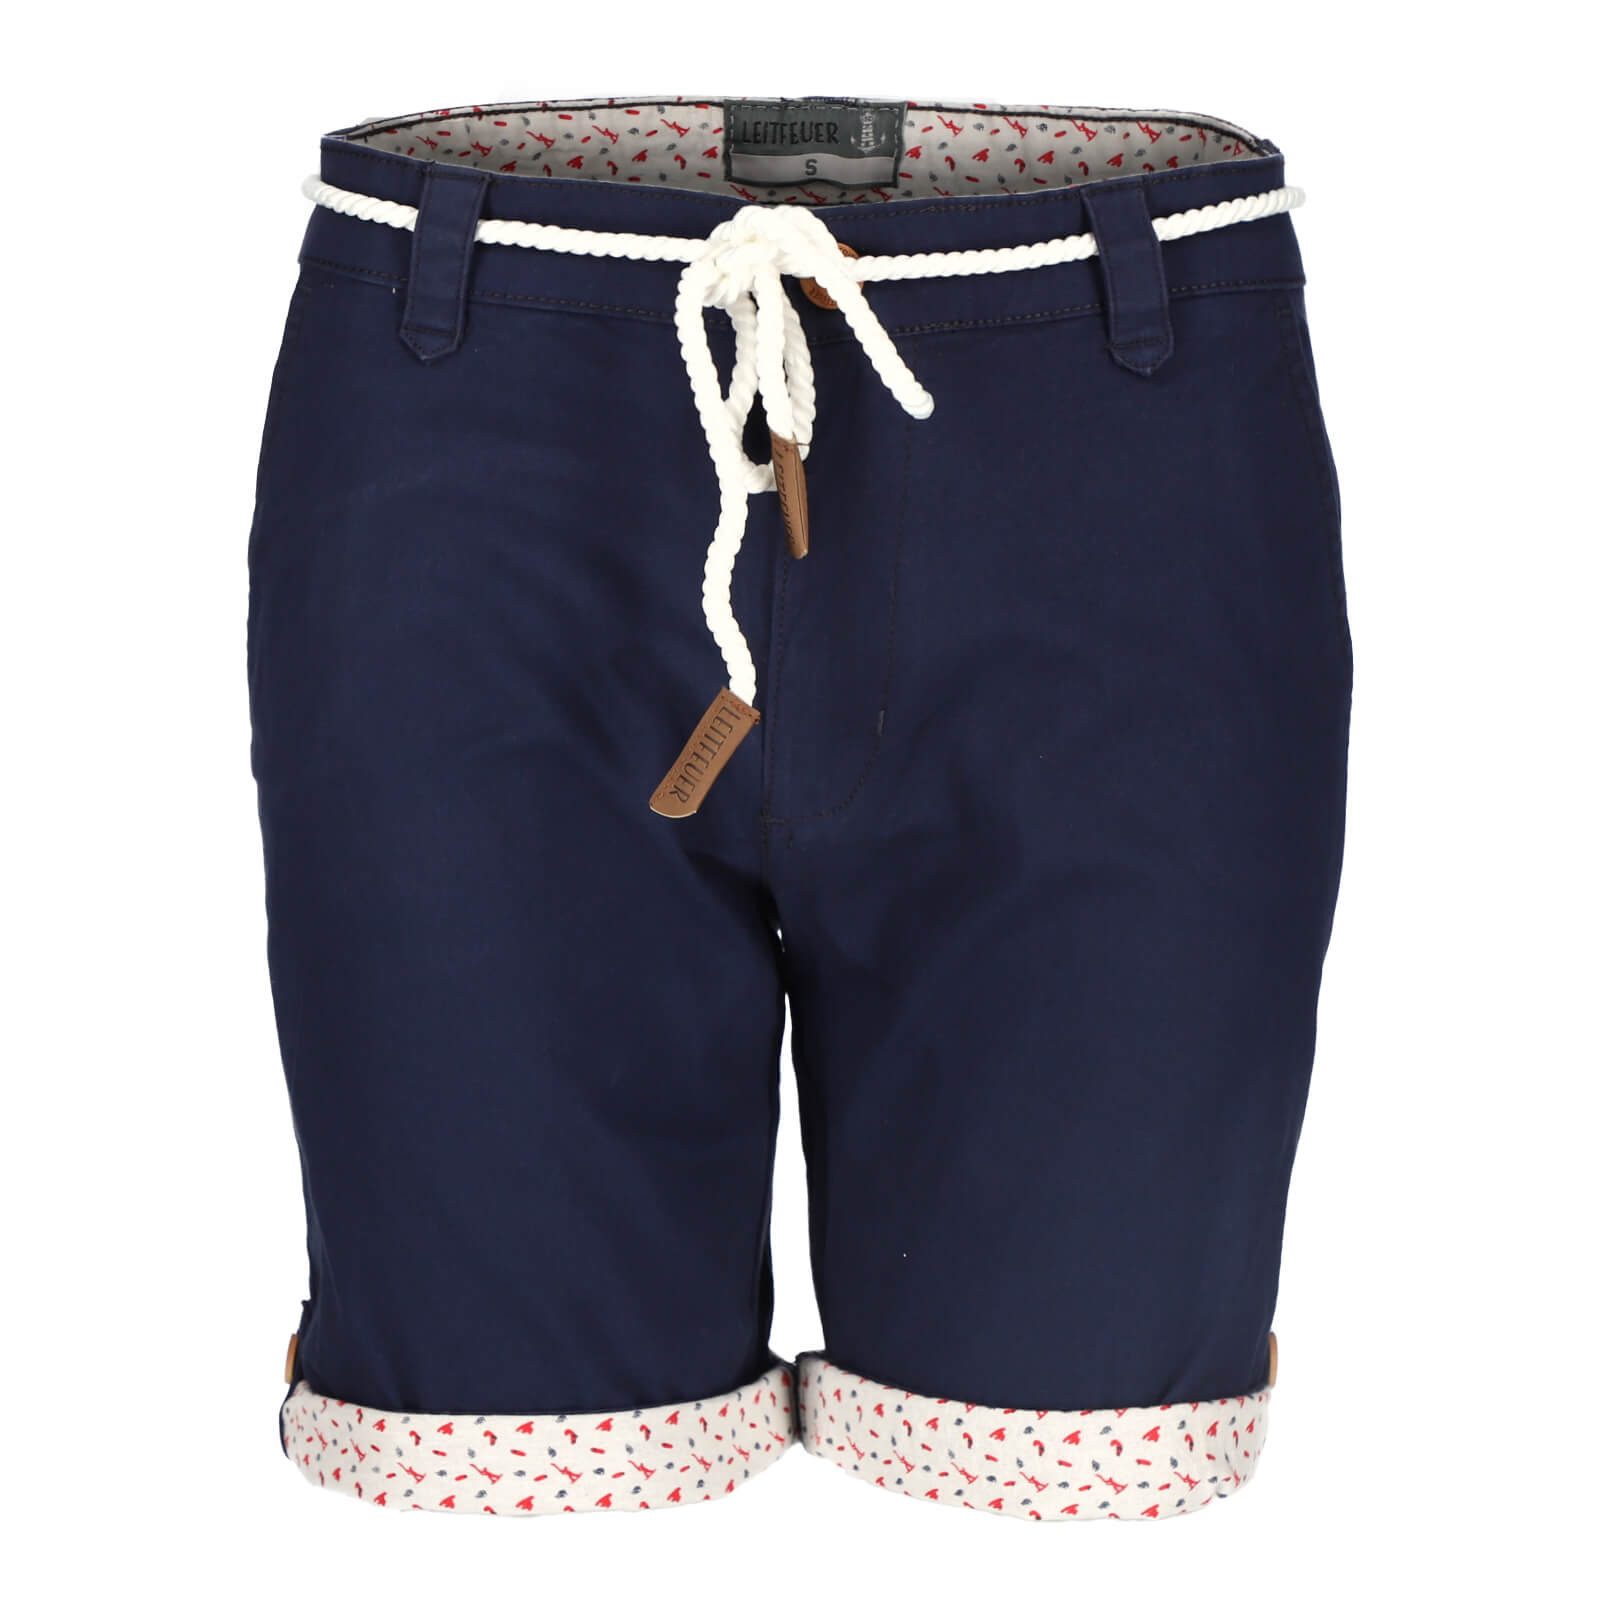 Leitfeuer Bermudas Damen Shorts mit Kordel - Kurze Hose mit Reißverschluss und Knopf